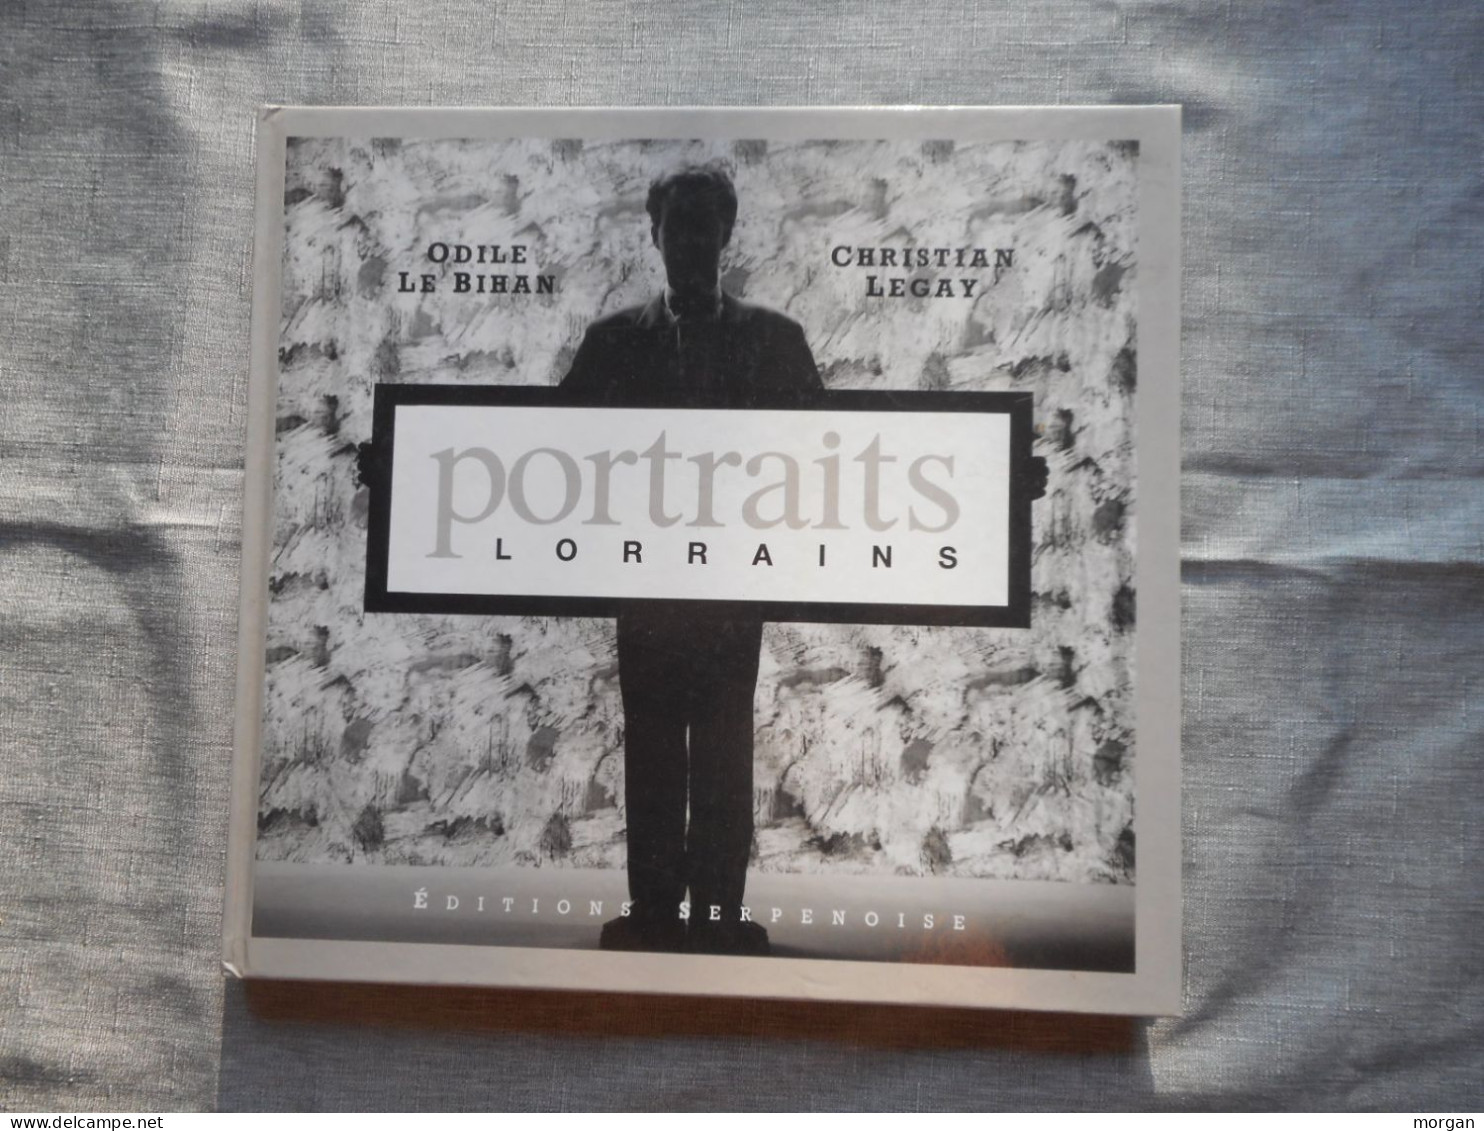 LORRAINE - PORTRAITS LORRAINS, 1989, O. LE BIHAN / C. LEGAY, ALBUM DE GALERIES DE PORTRAITS - Lorraine - Vosges